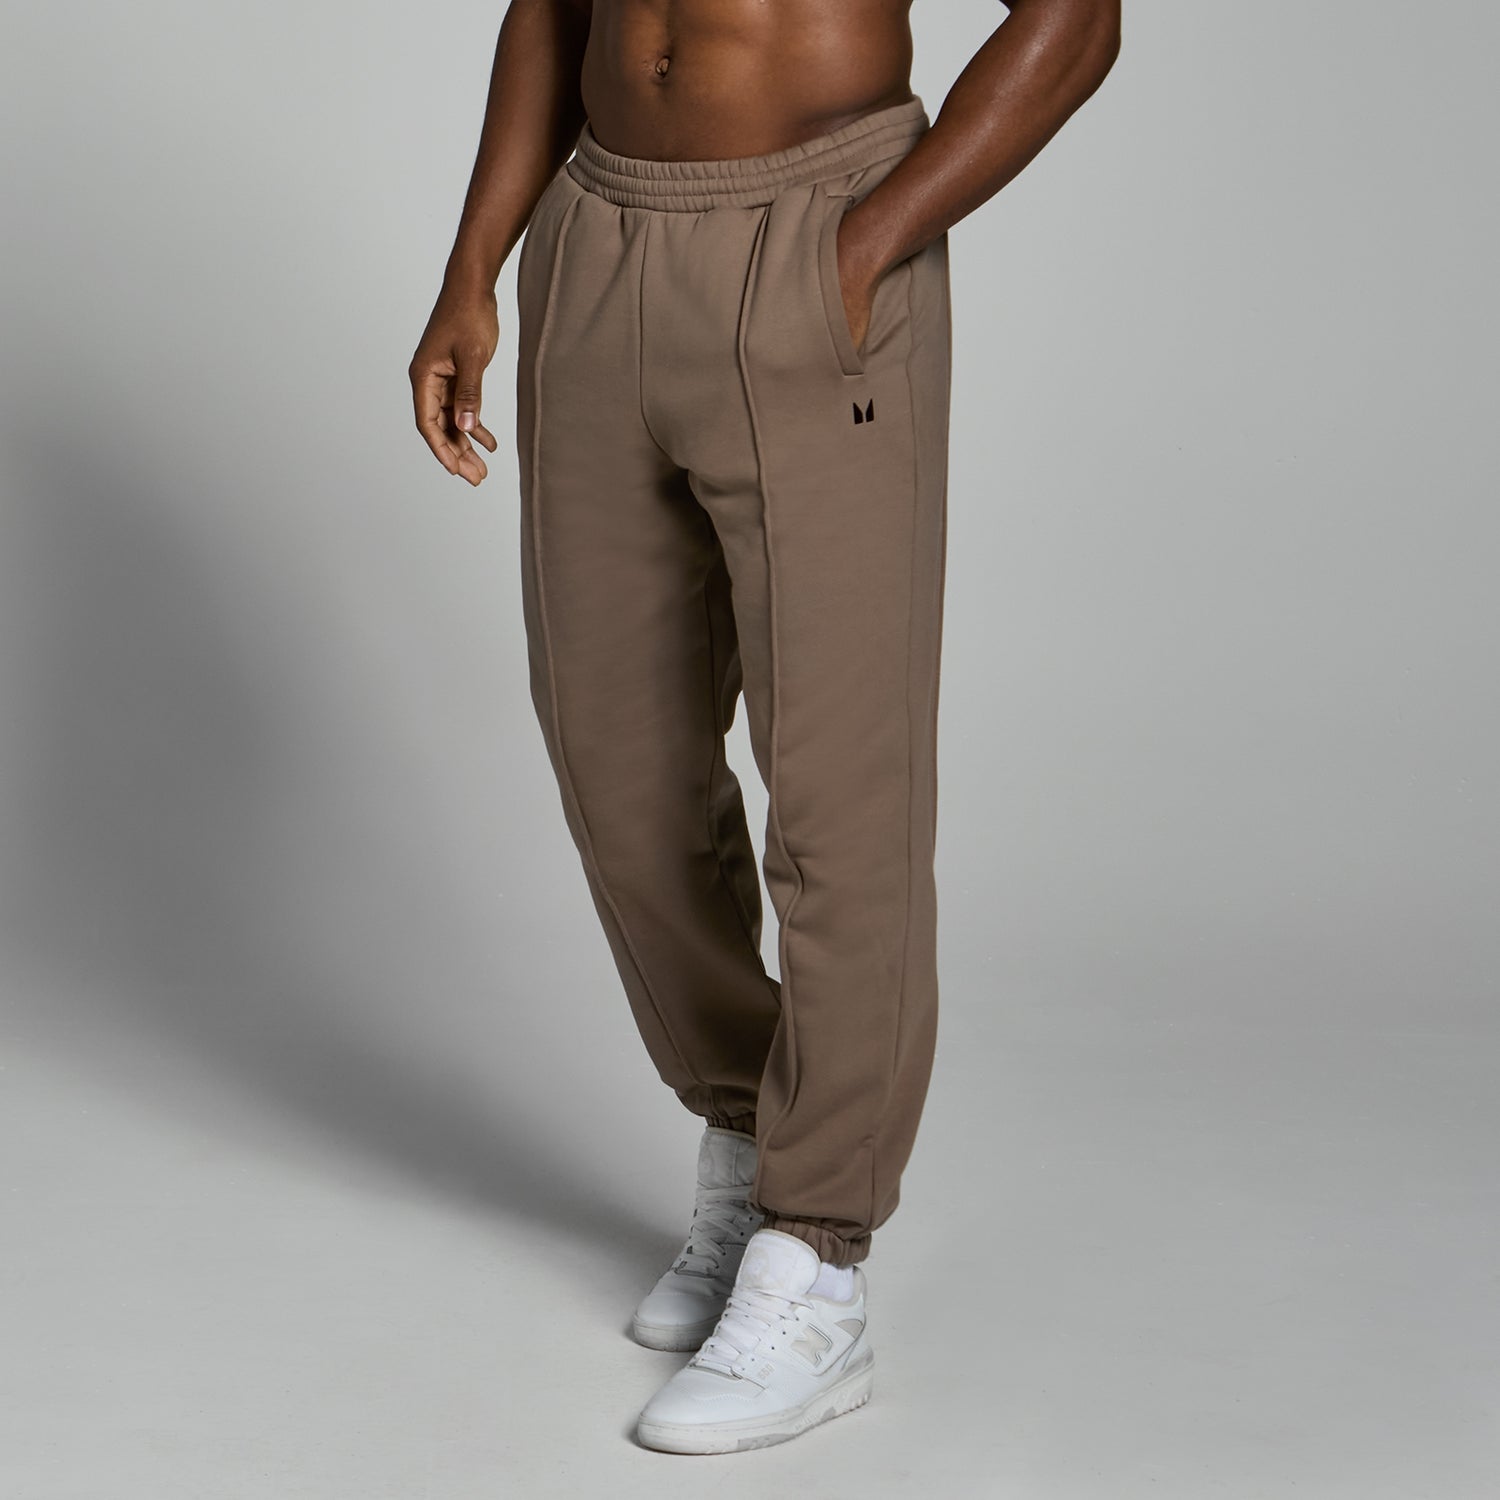 Lifestyle生活方式系列男士超大版型厚实运动裤 - 柔棕色 - XS